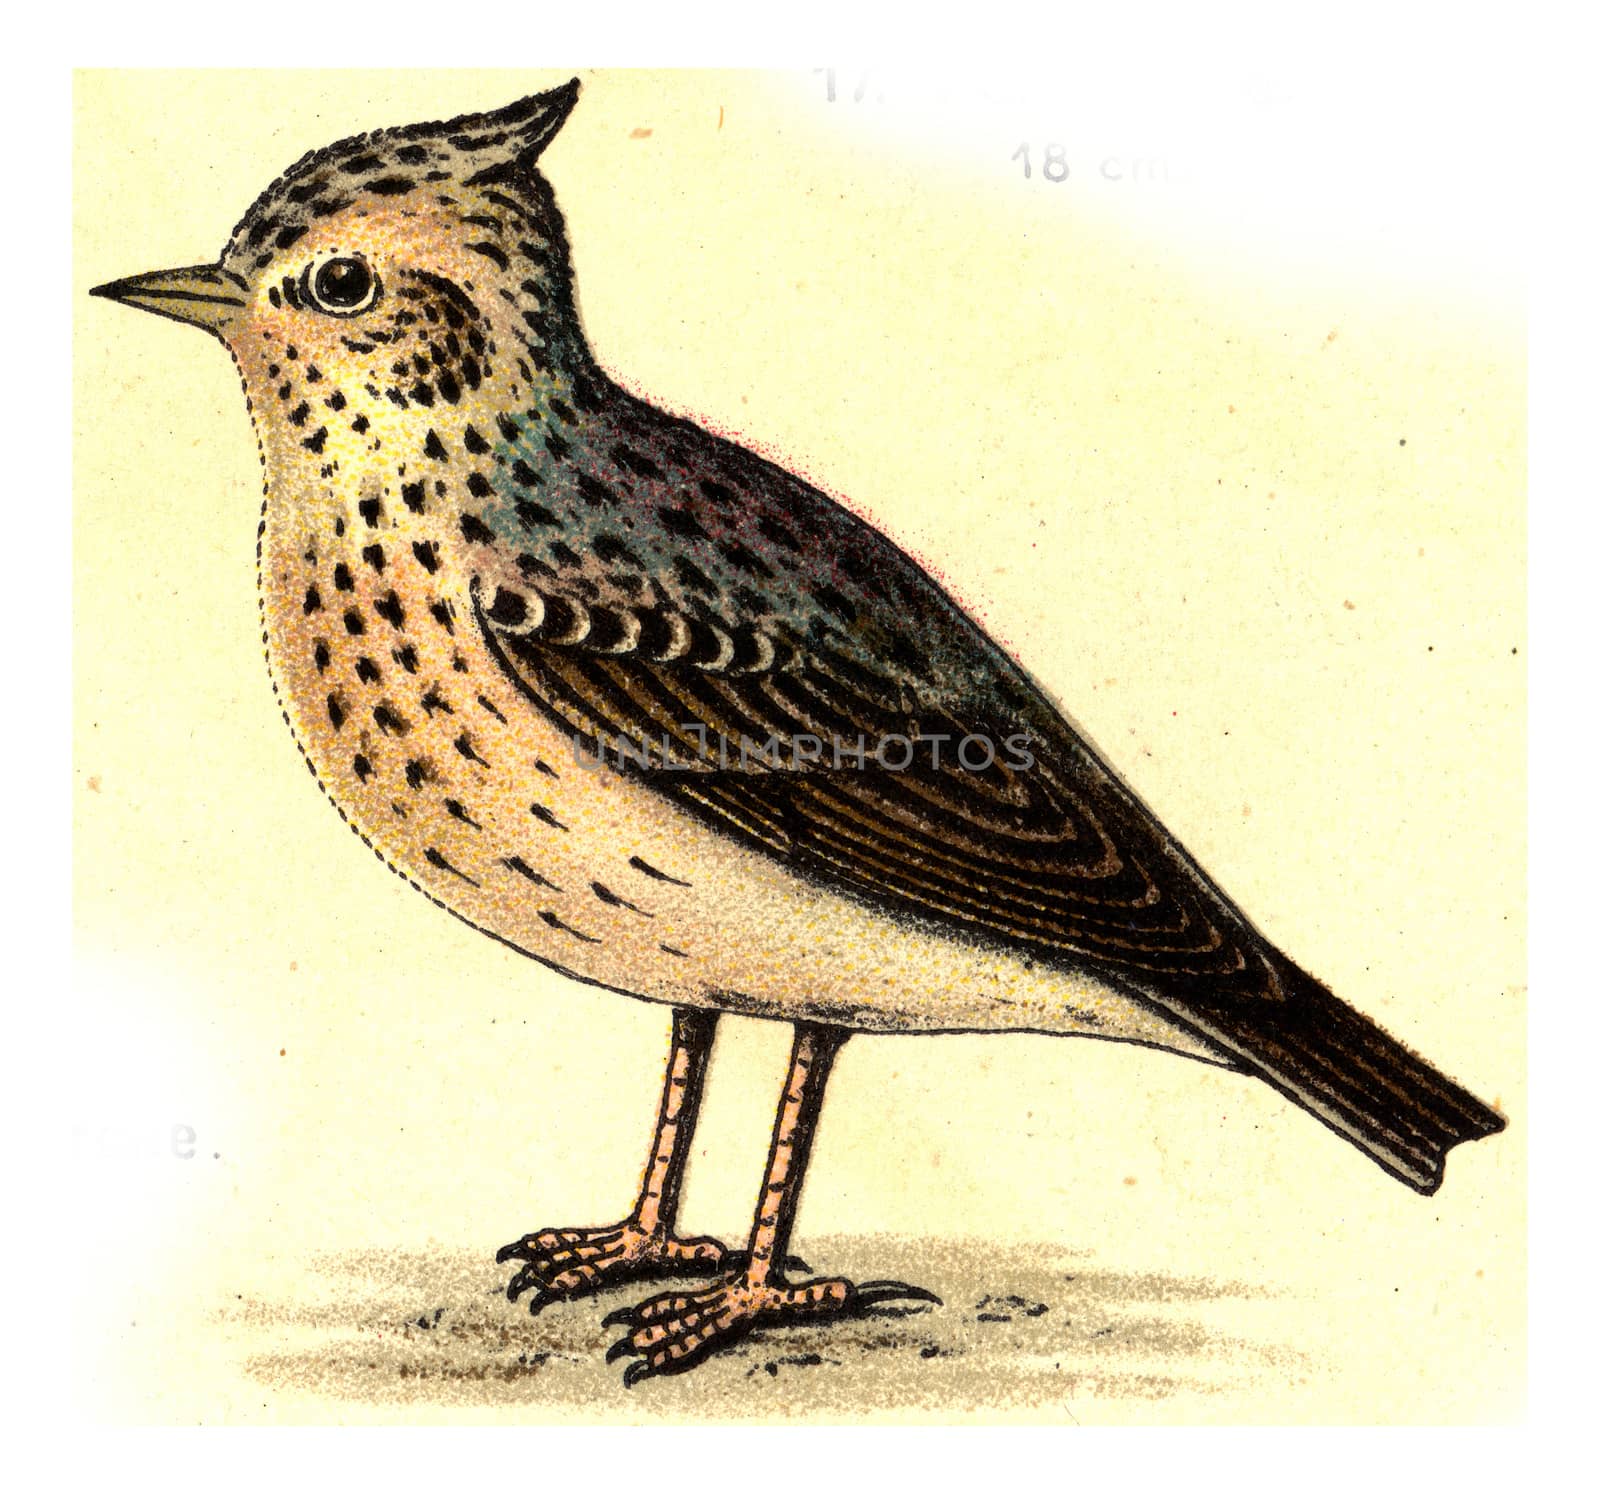 Crested lark, vintage engraved illustration. From Deutch Birds of Europe Atlas.
